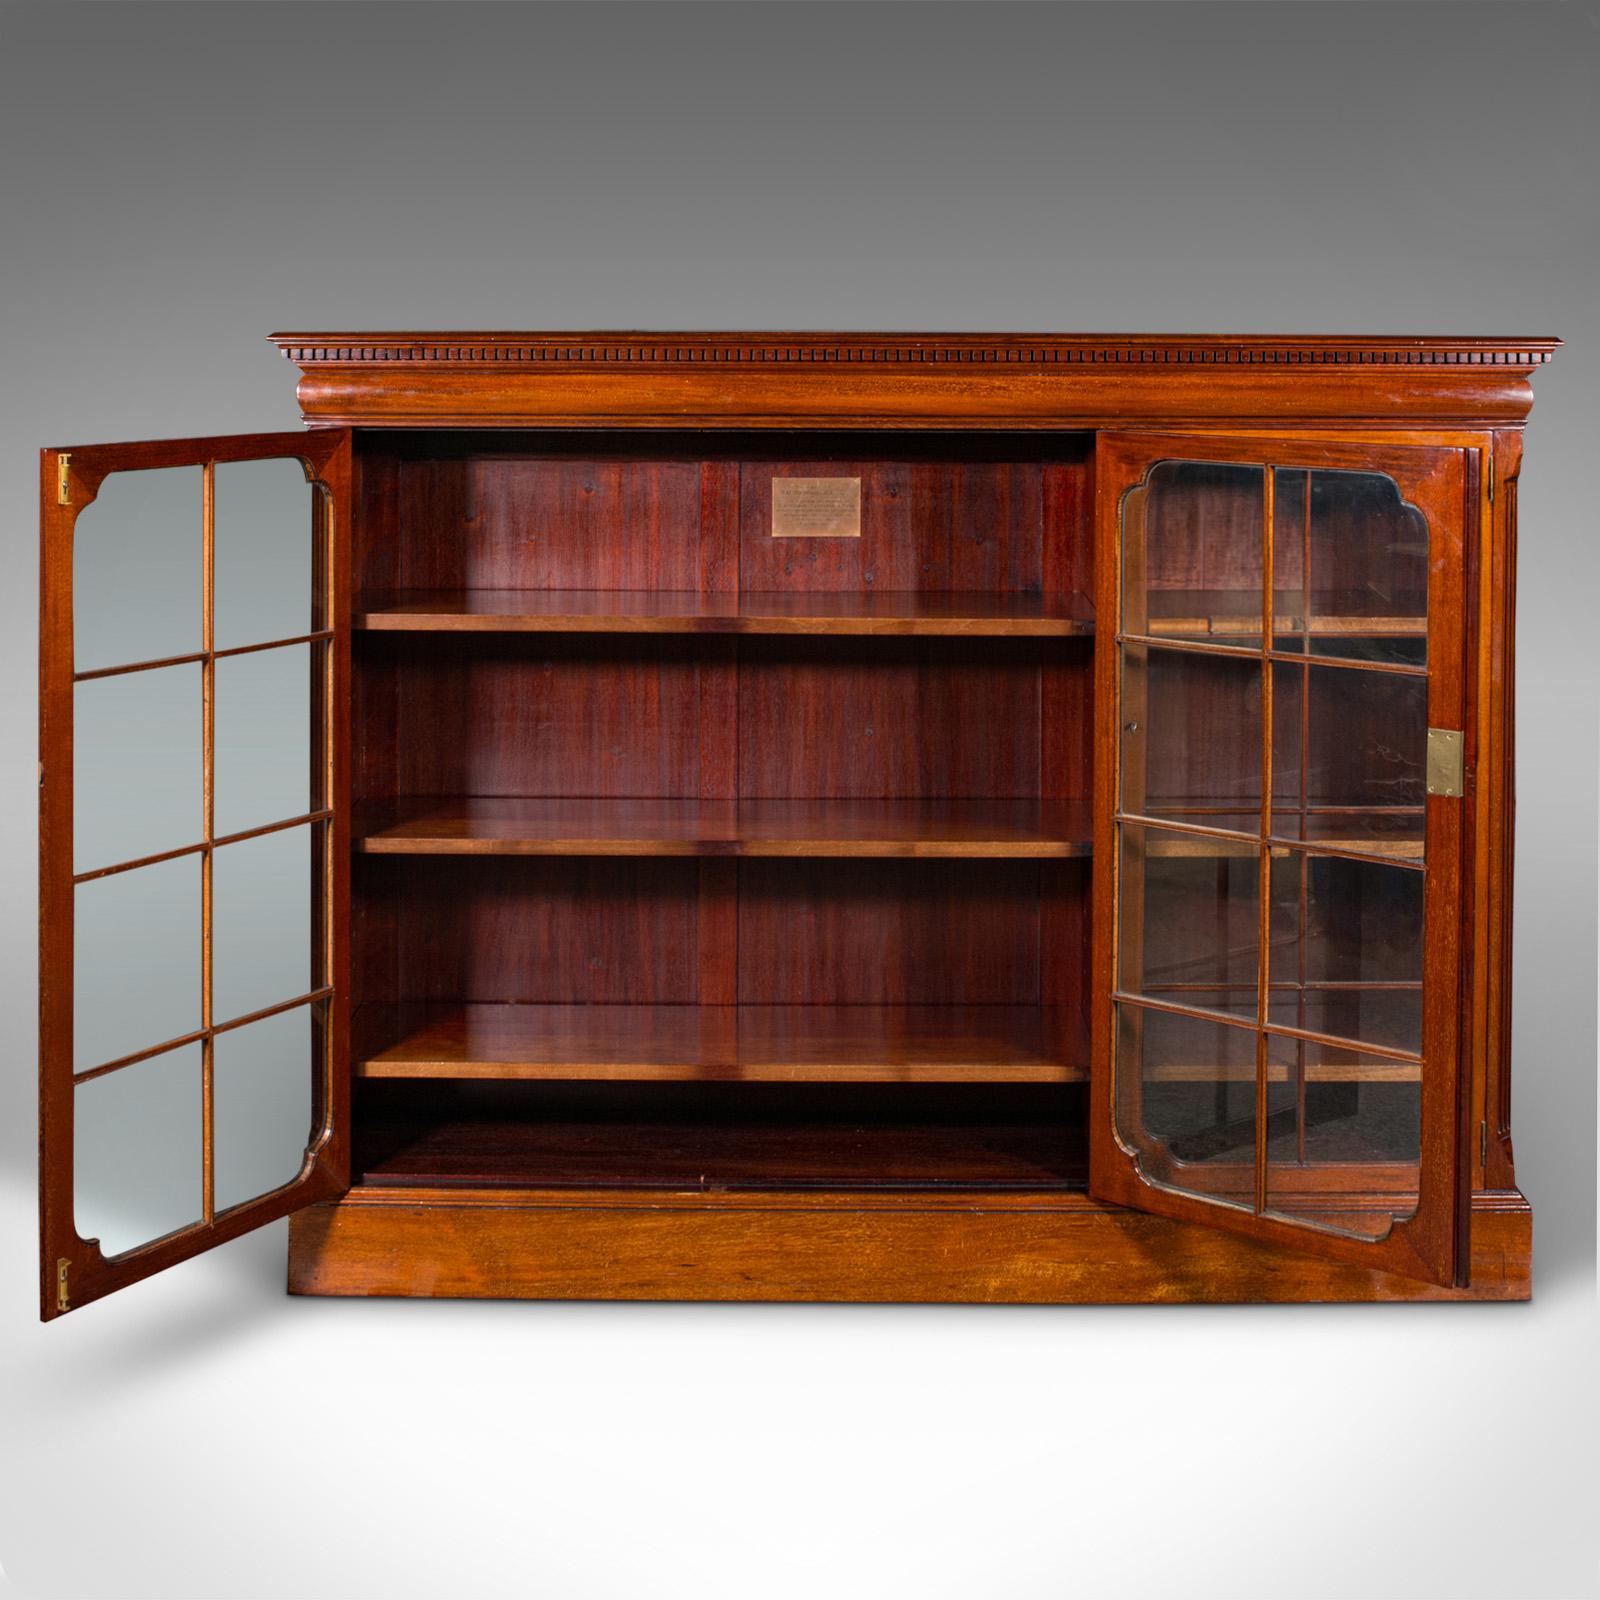 British Antique Glazed Bookcase, English, Walnut, Library Cabinet, Edwardian, Circa 1910